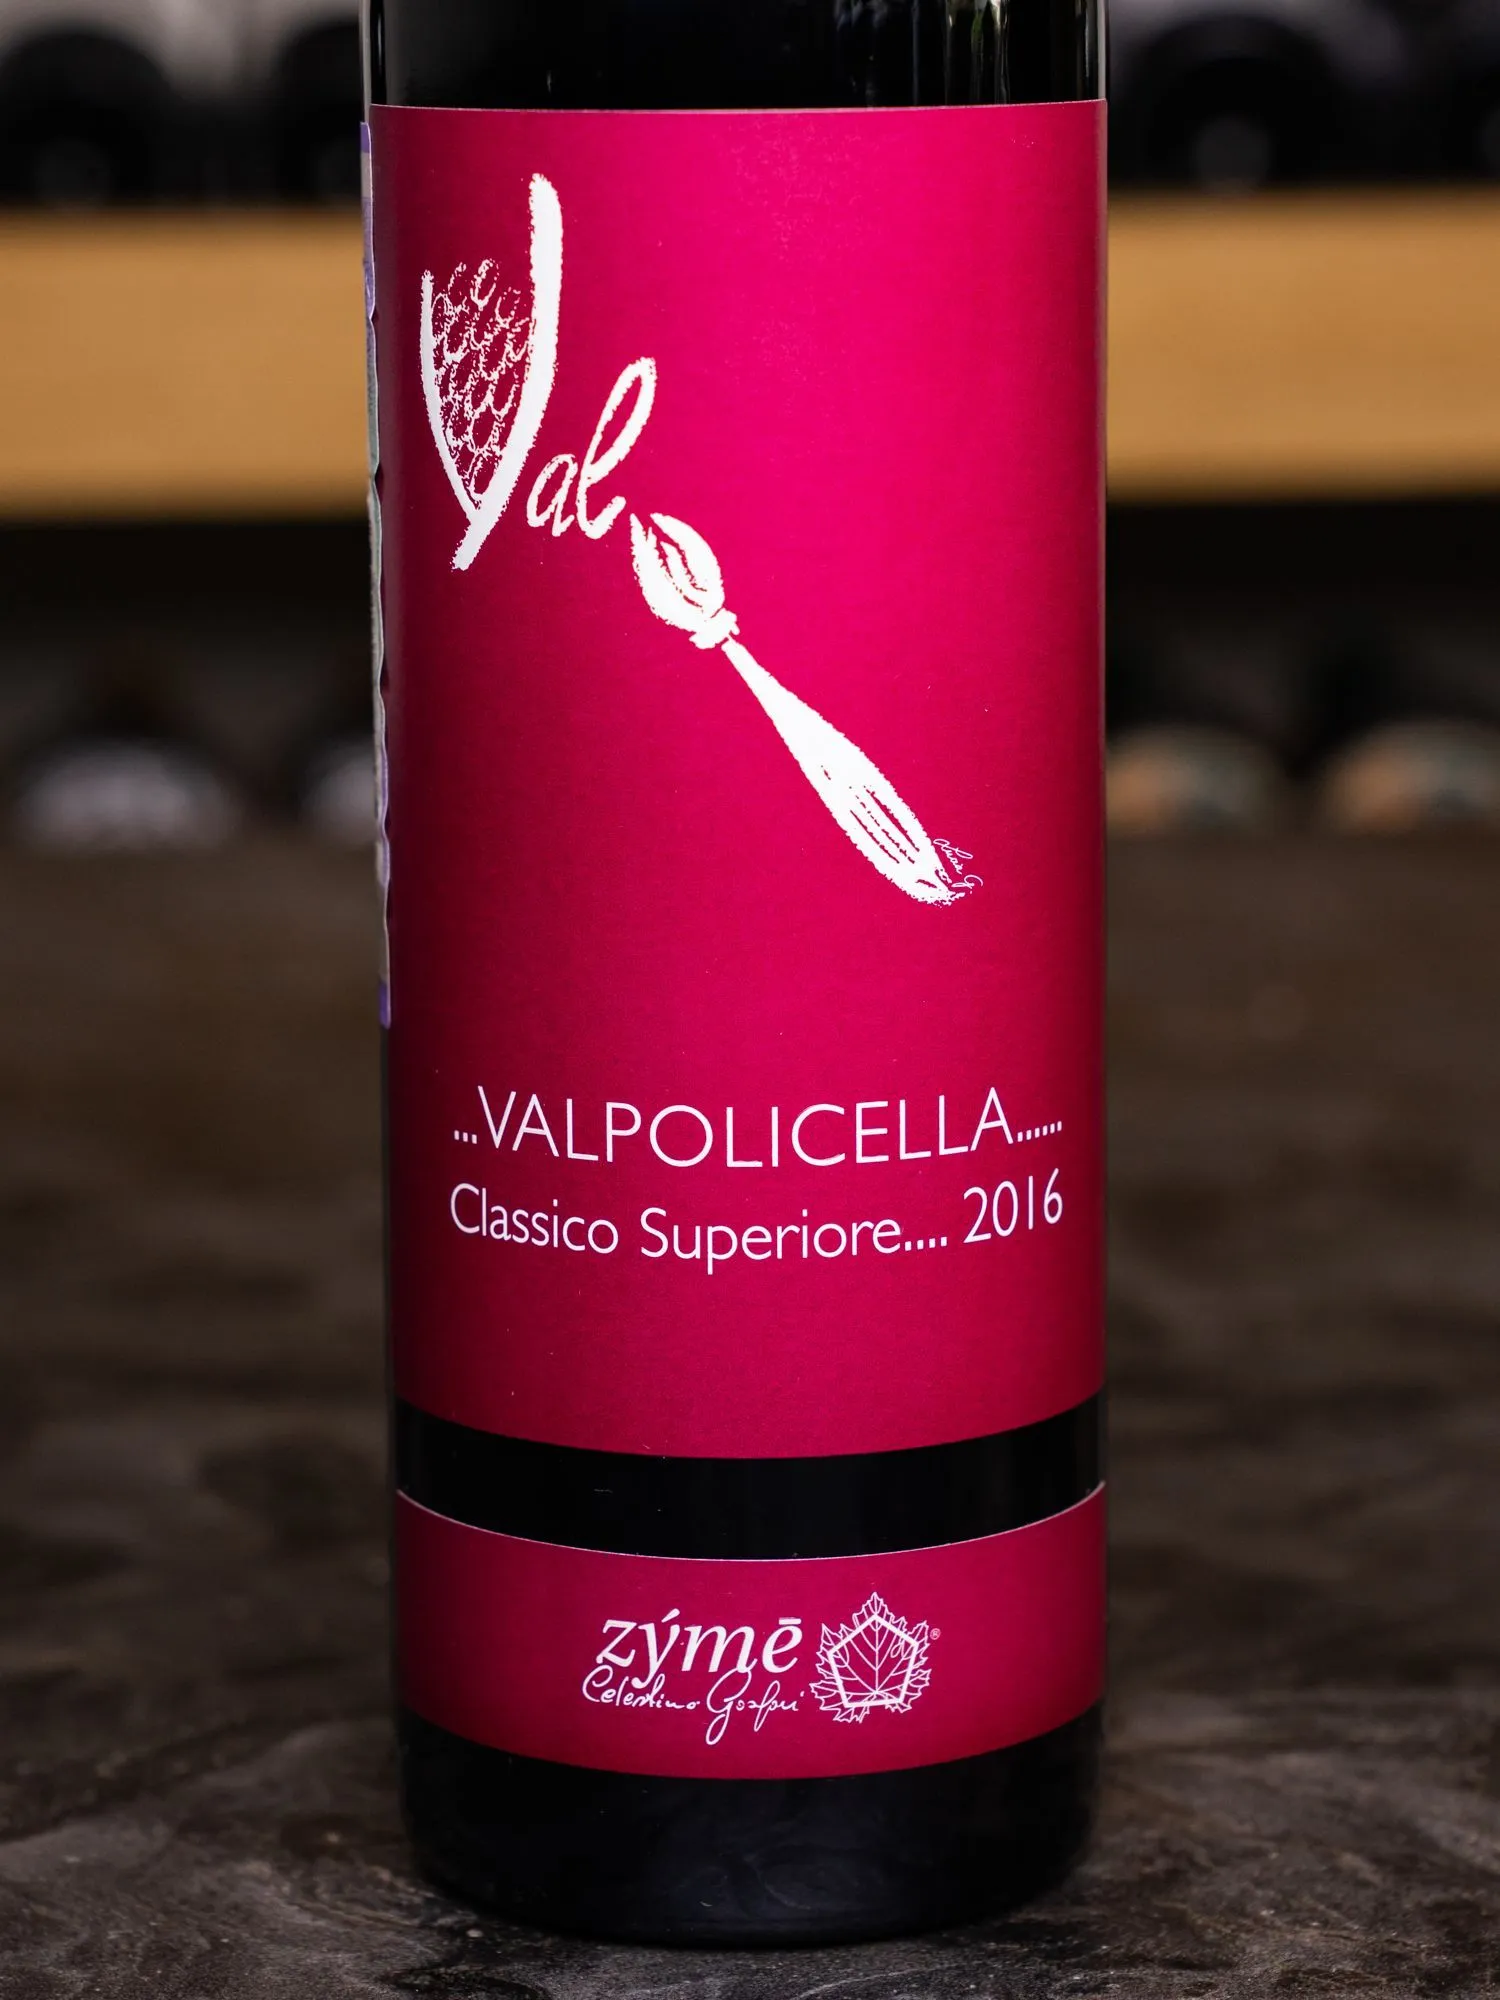 Вино Zyme Valpolicella Classico Superiore / Дзиме Вальполичелла Классико Супериоре